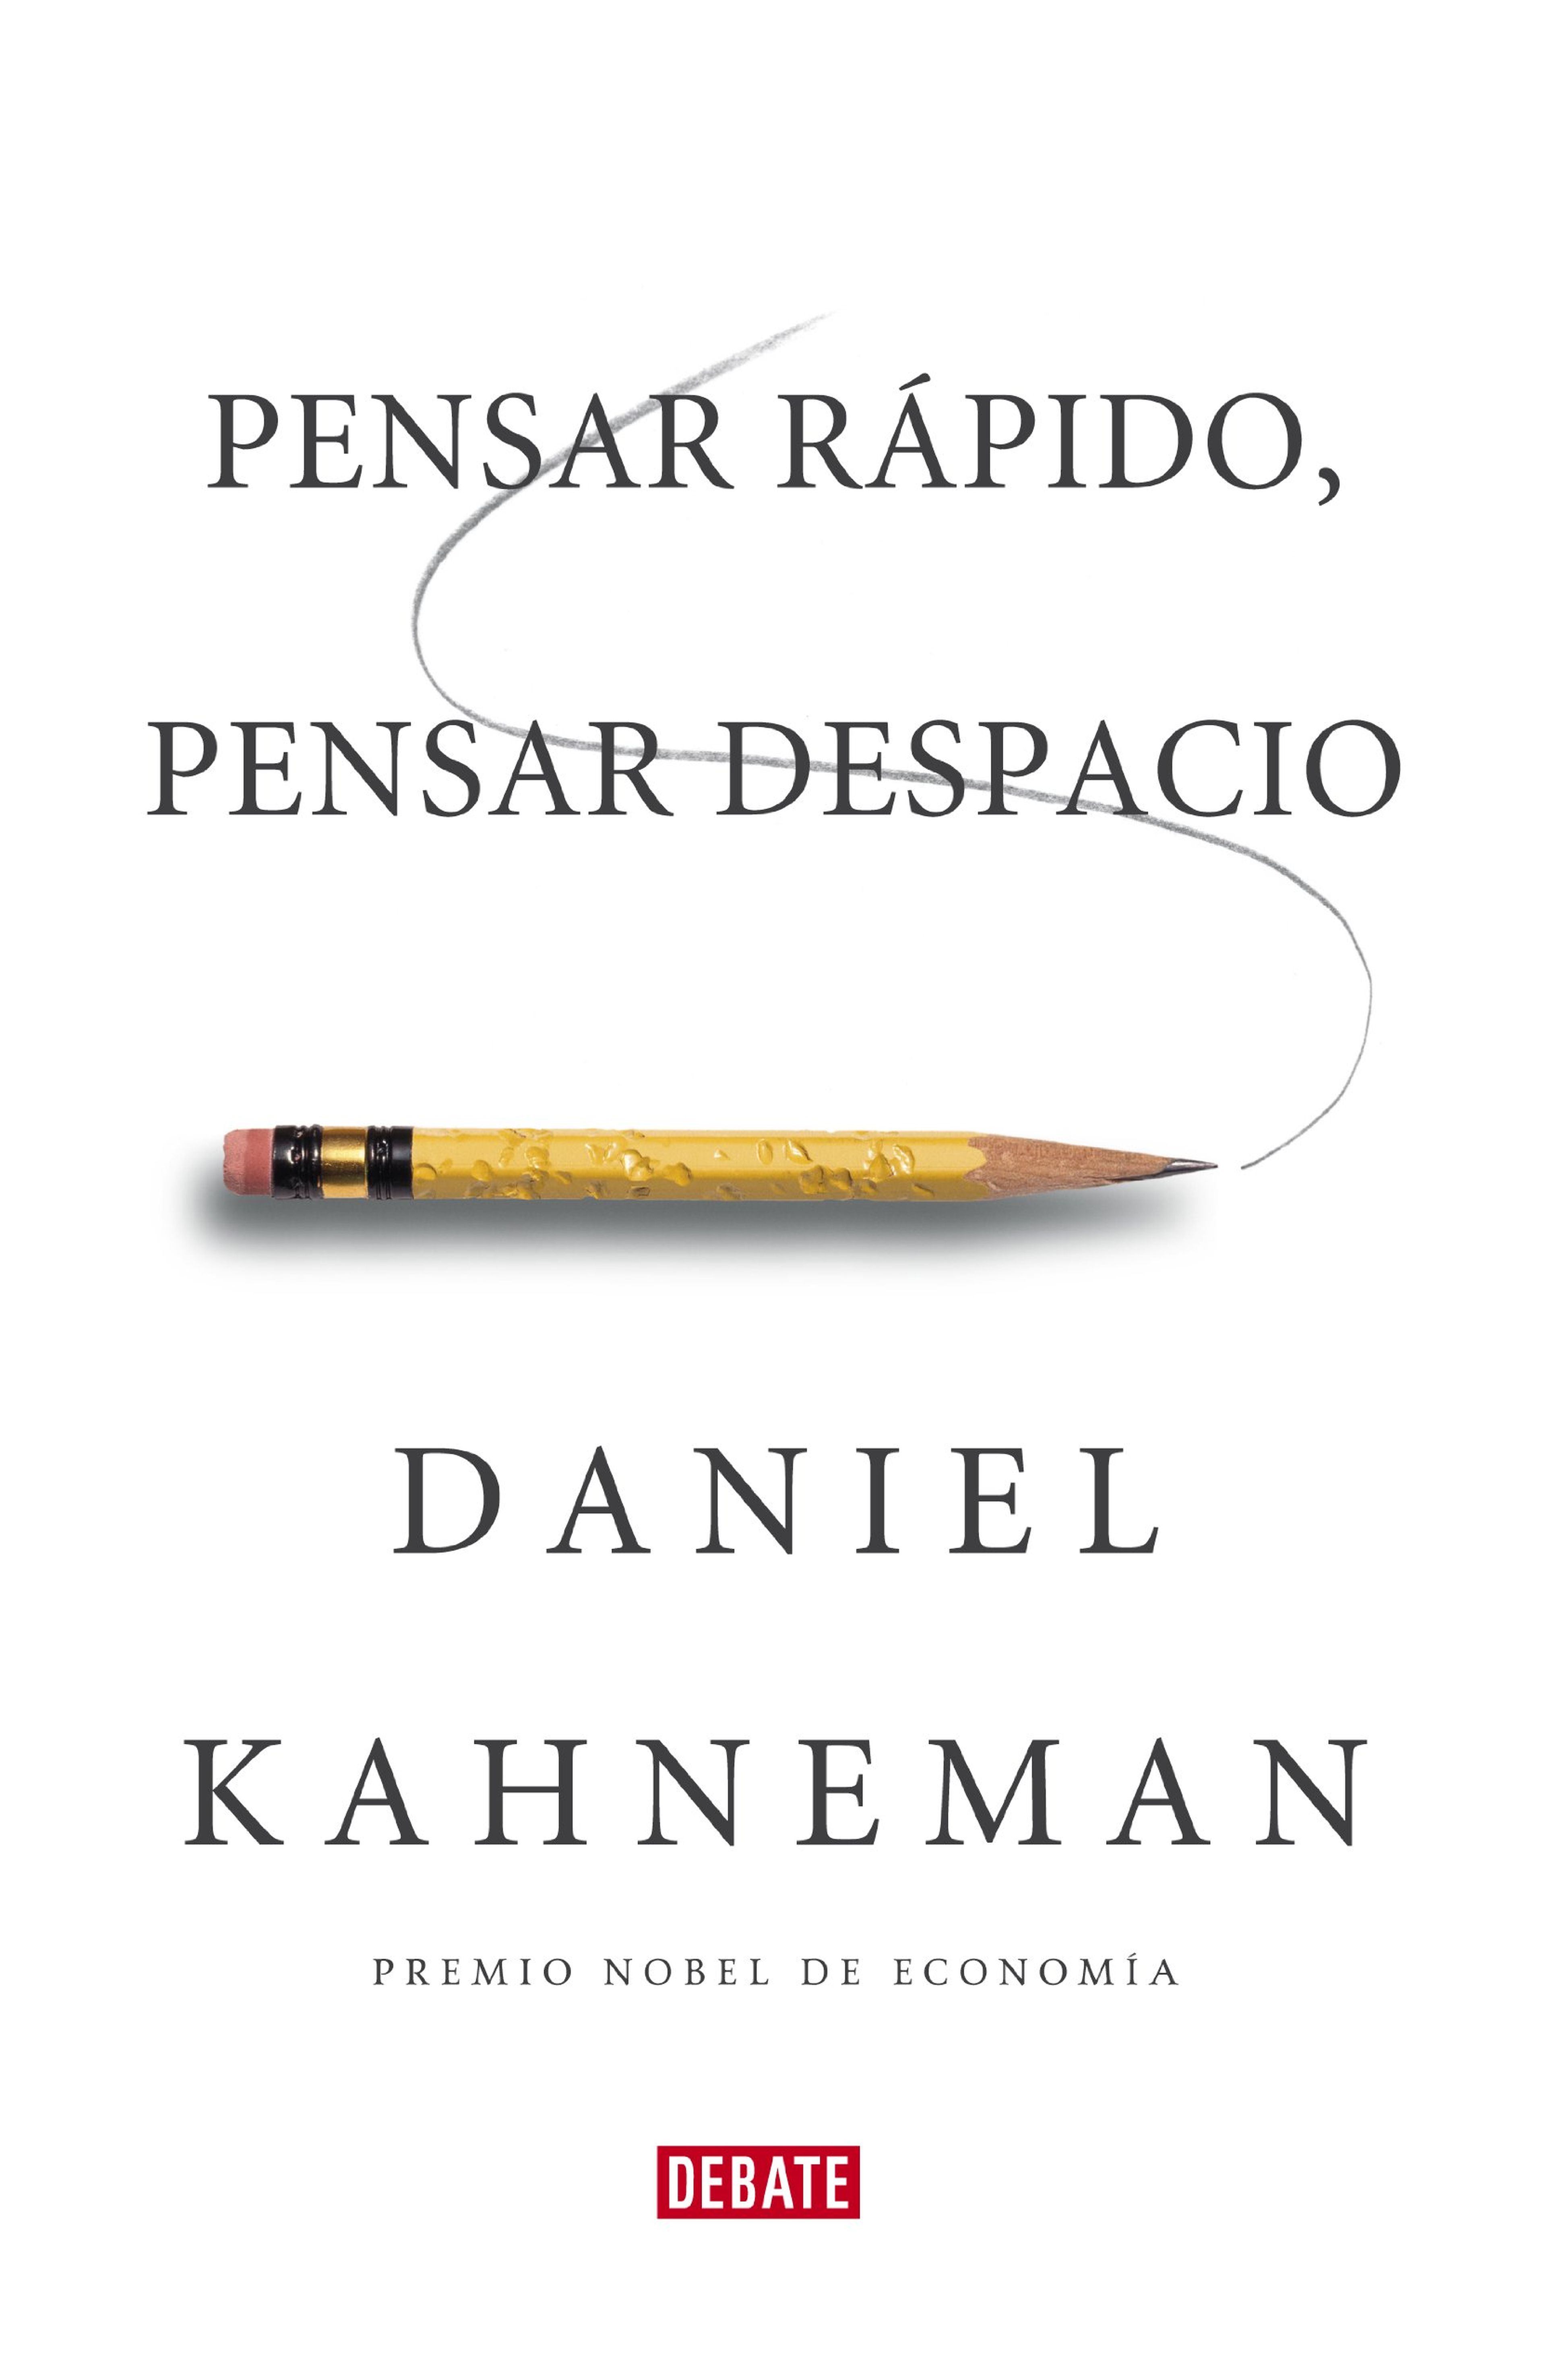 'Pensar rápido, pensar despacio', Daniel Kahneman.